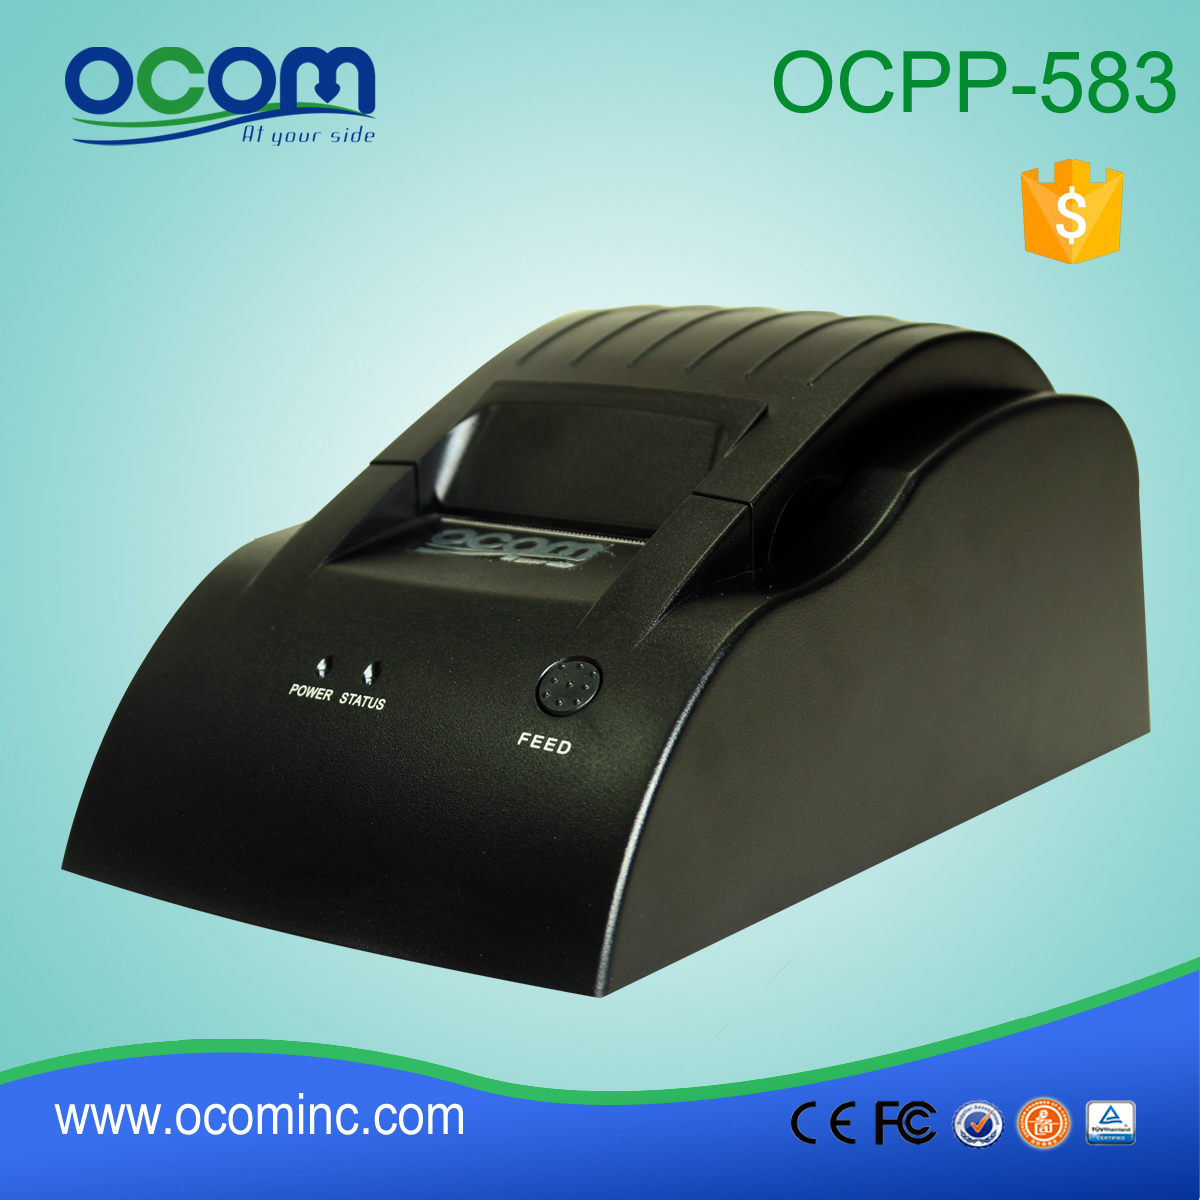 OCPP-583-L台式58mm热敏POS收据打印机LAN接口